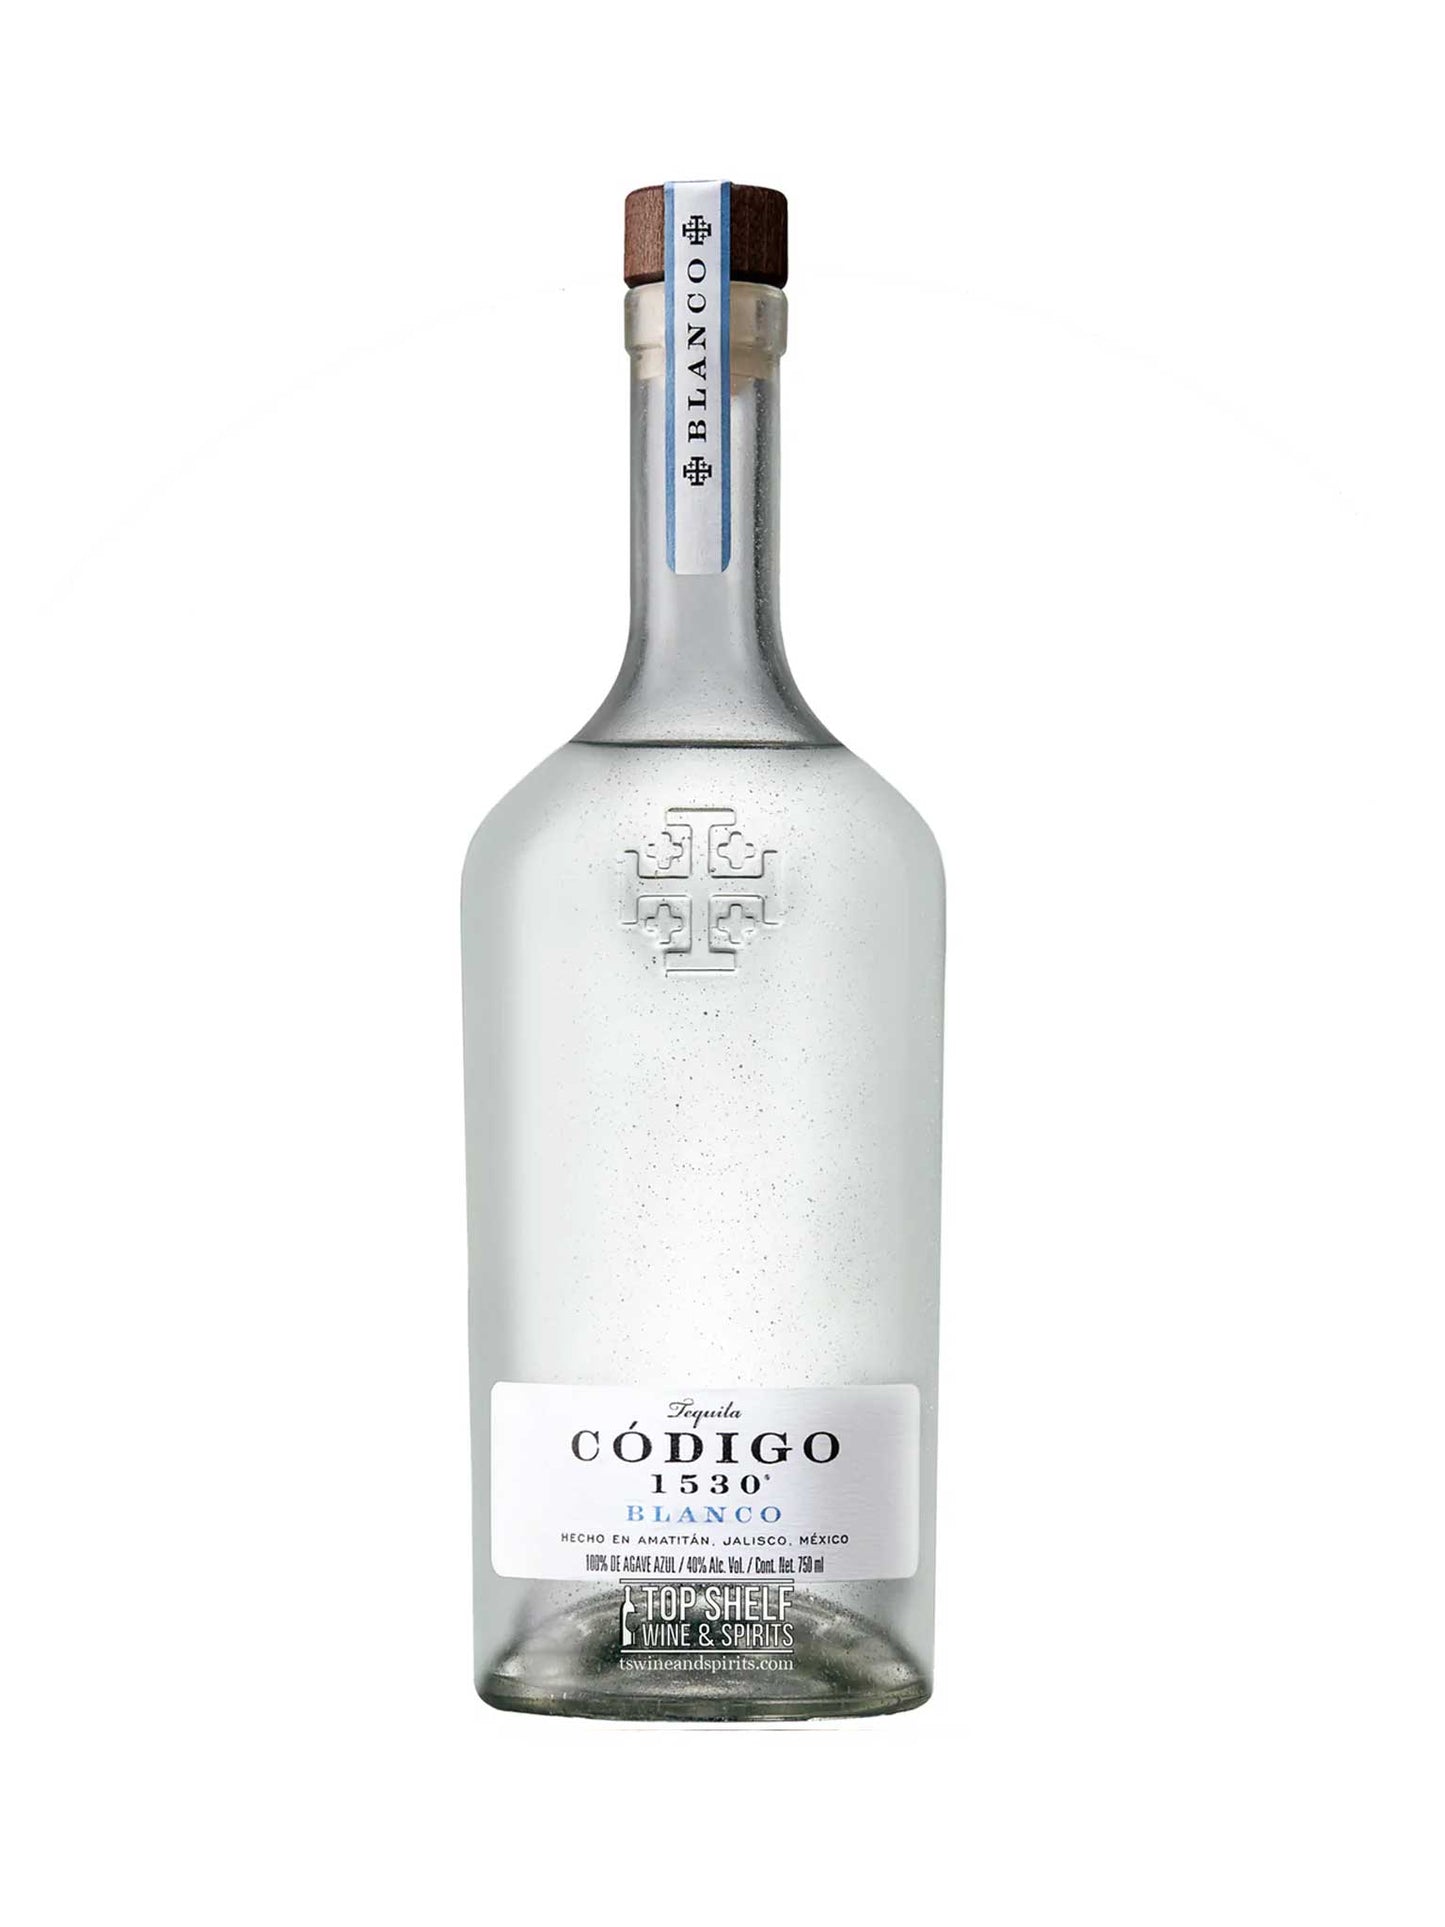 Codigo 1530 Tequila Blanco 750mL